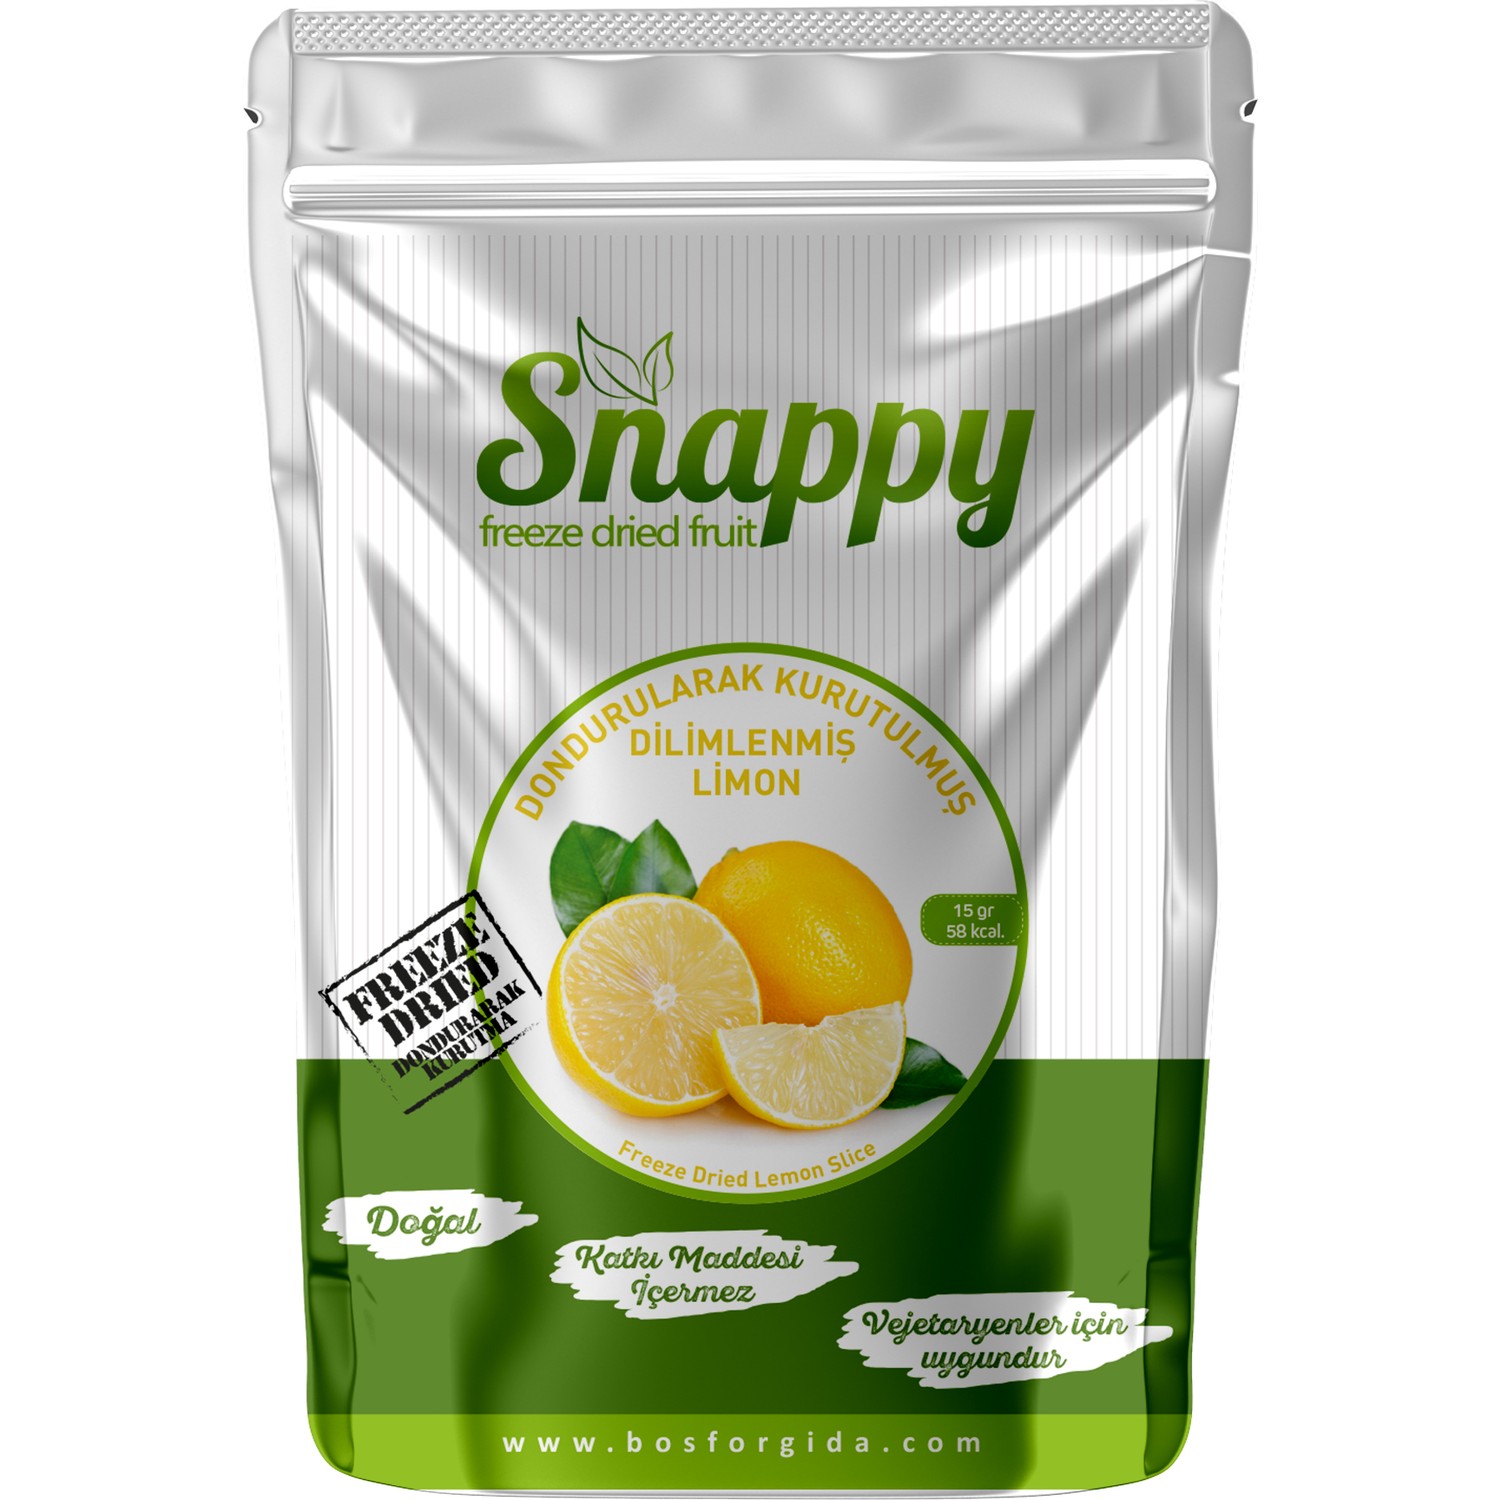 Dondurularak Kurutulmuş Limon - Snappy